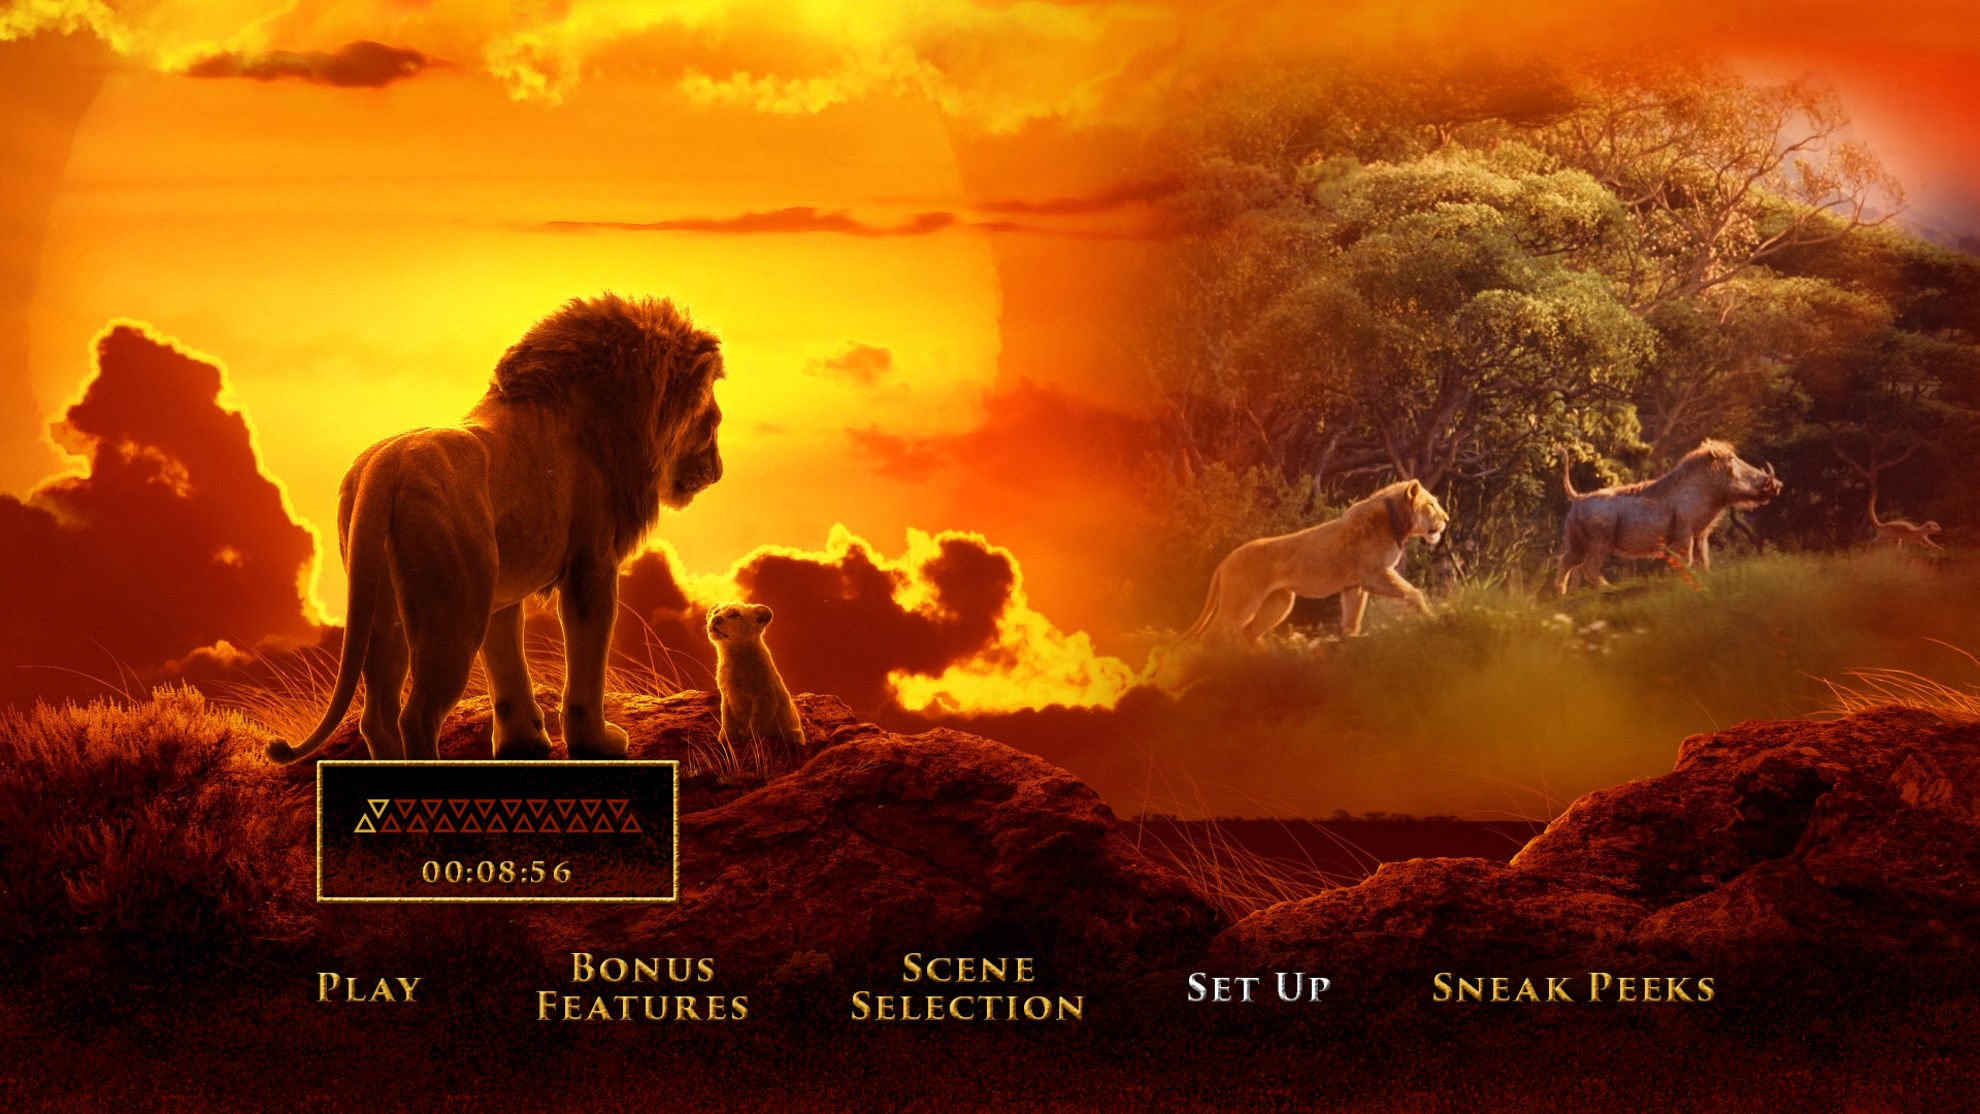 狮子王 / 狮子王真人版【原盘DIY台配国语/粤语 简繁/双语特效字幕】“修复蓝光机黑屏问题” The Lion King 2019 1080p V2 Blu-ray AVC DTS-HD MA 7.1-Thor@HDSky[42.52 GB]-6.jpg